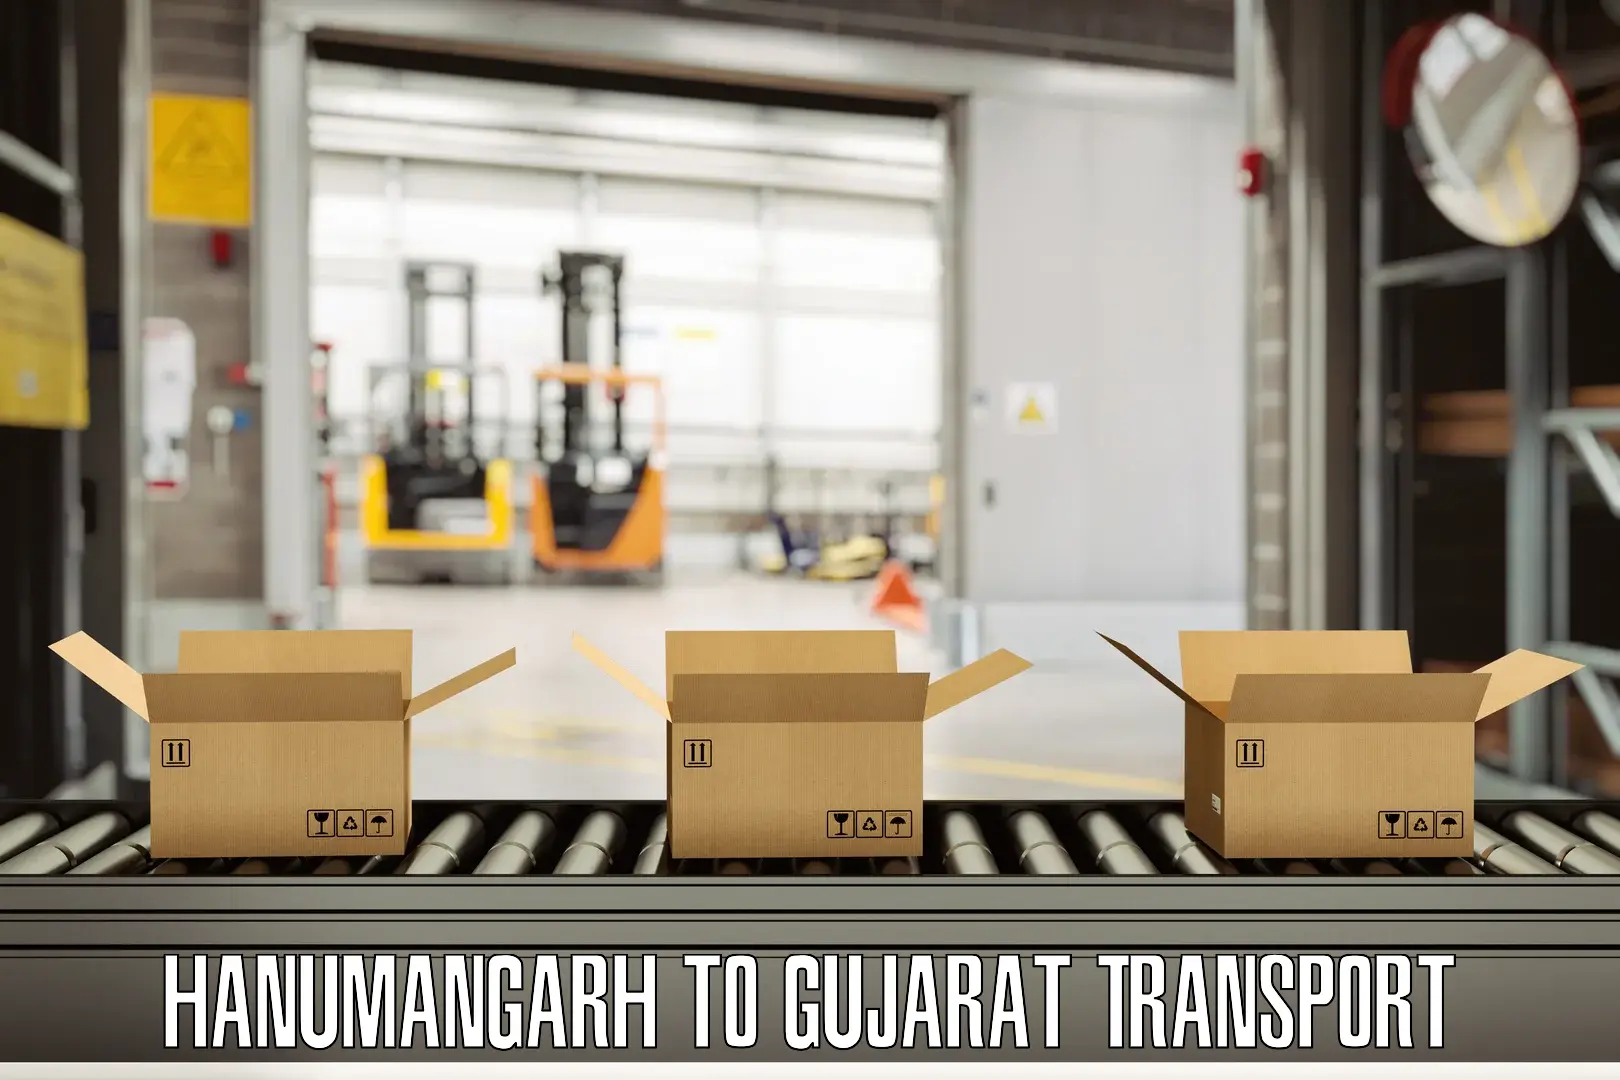 Online transport booking Hanumangarh to Gandhinagar